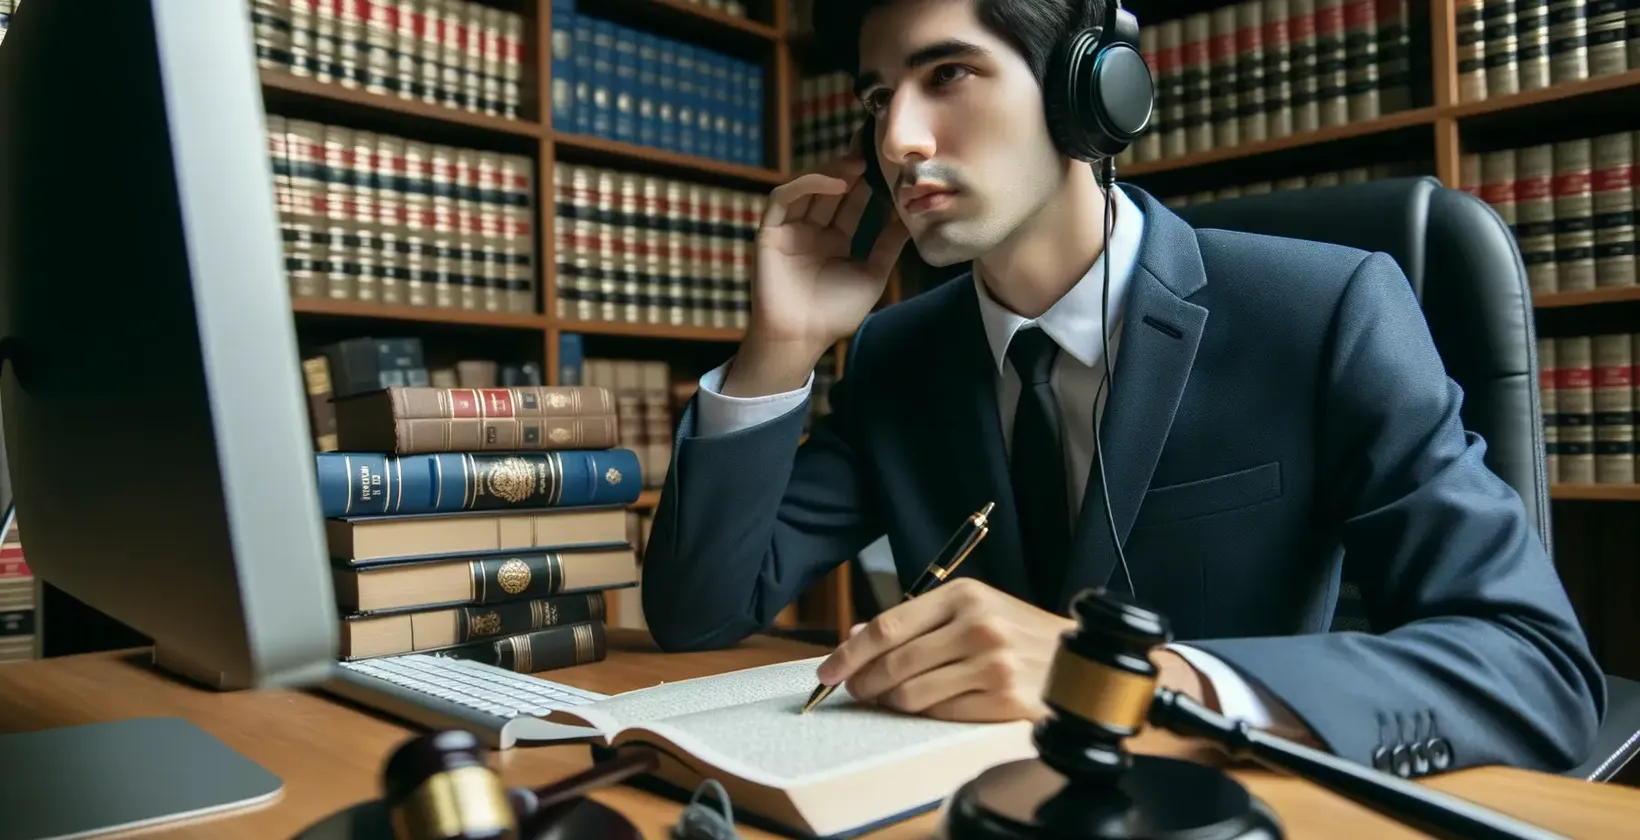 Usługi transkrypcji prawnej prezentowane przez profesjonalistę ze słuchawkami w bibliotece prawniczej.